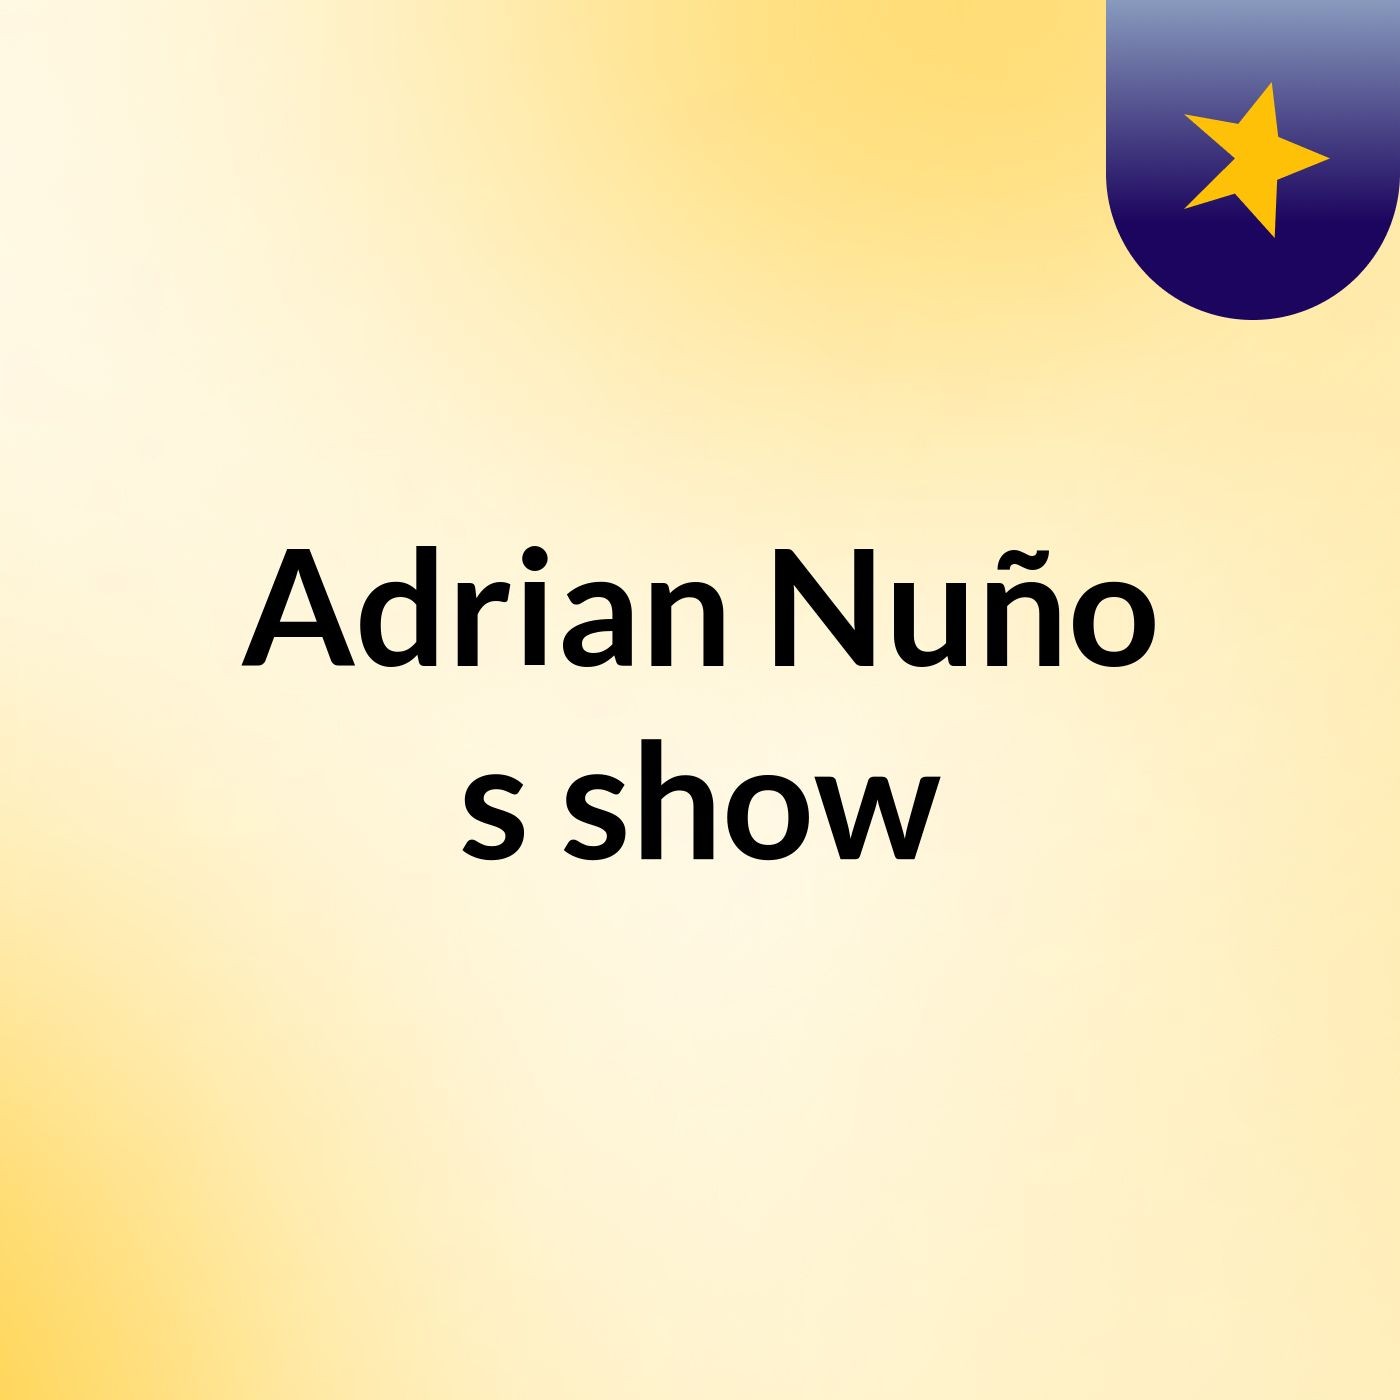 Adrian Nuño's show